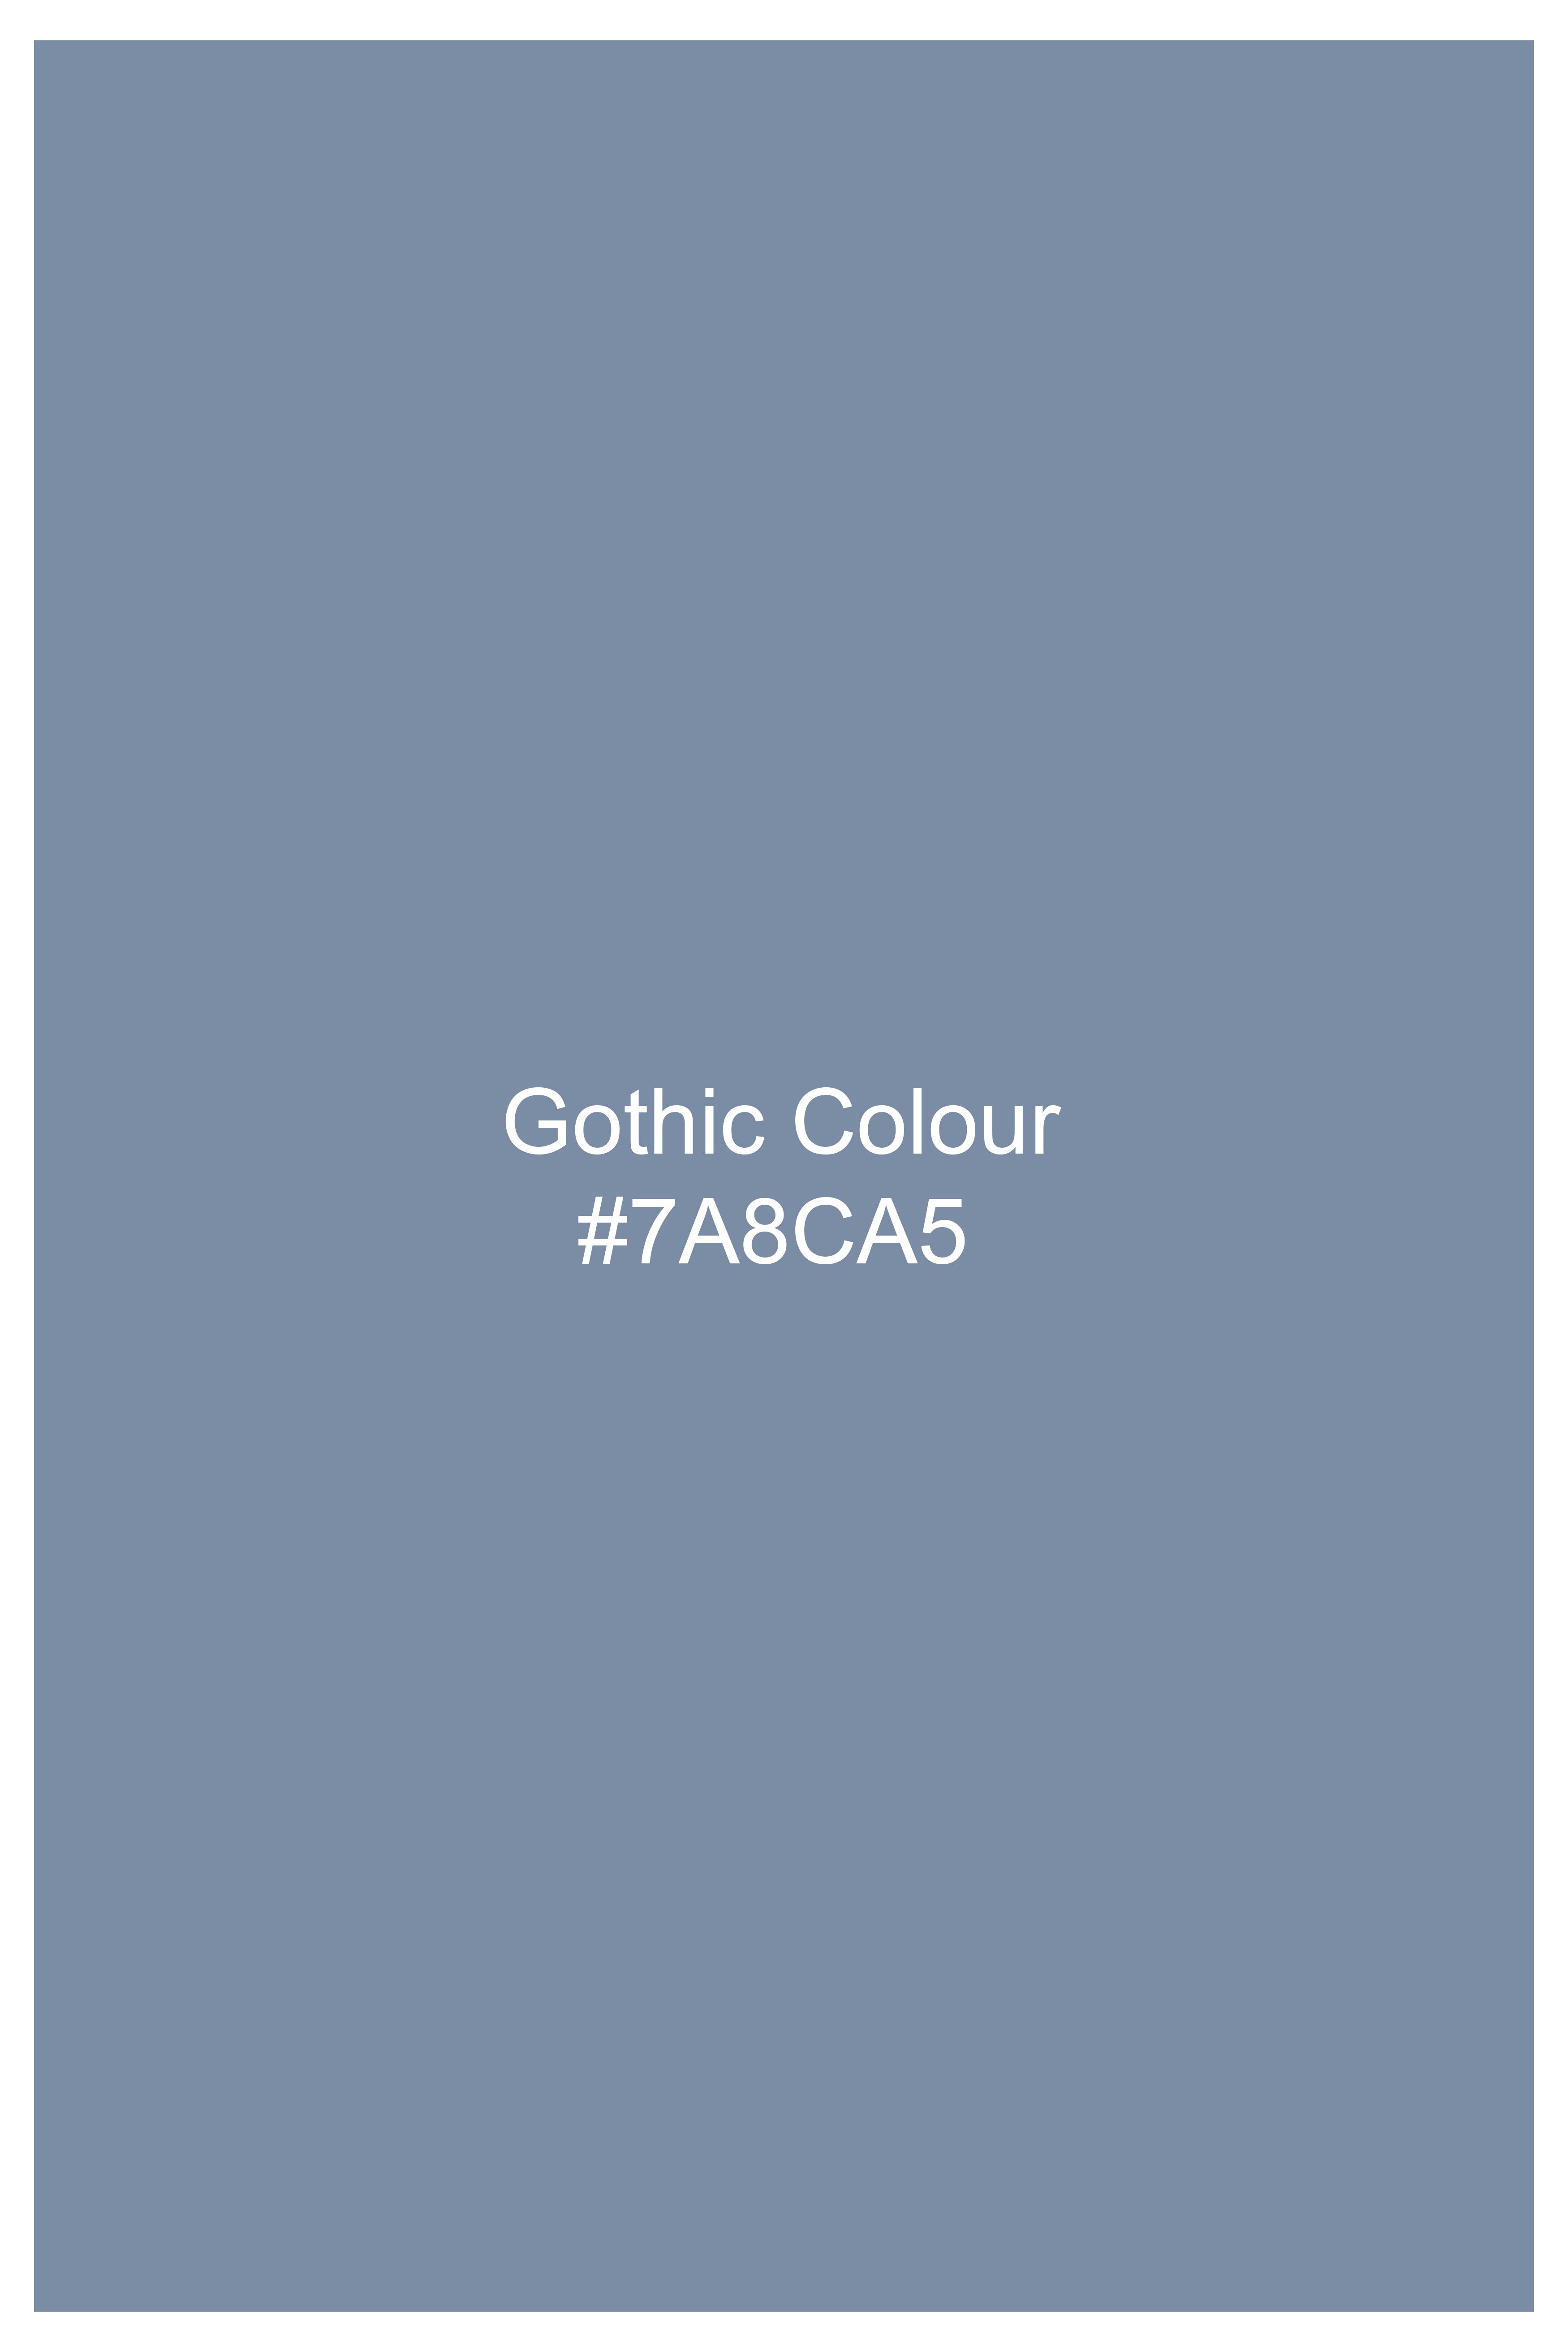 Gothic Blue Acid Wash Stretchable Cargo Denim J263-30, J263-32, J263-34, J263-36, J263-38, J263-40